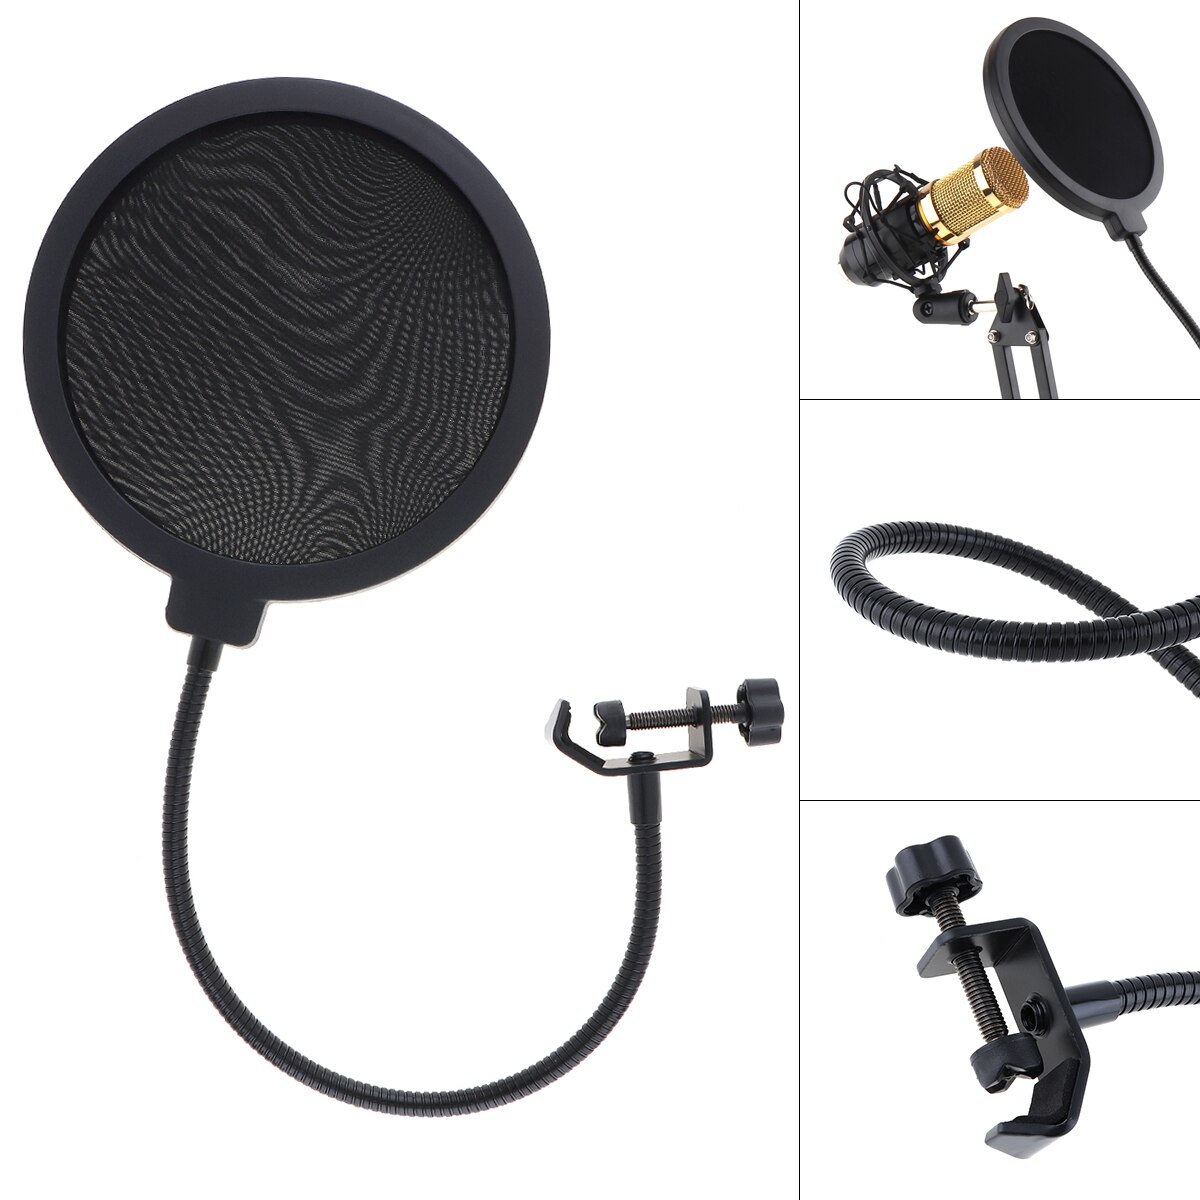 Double Layer Studio Microfoon Flexibele Wind Screen Mask Mic Pop Filter Shield Black Kleur Voor Spreken Recording Accessoires